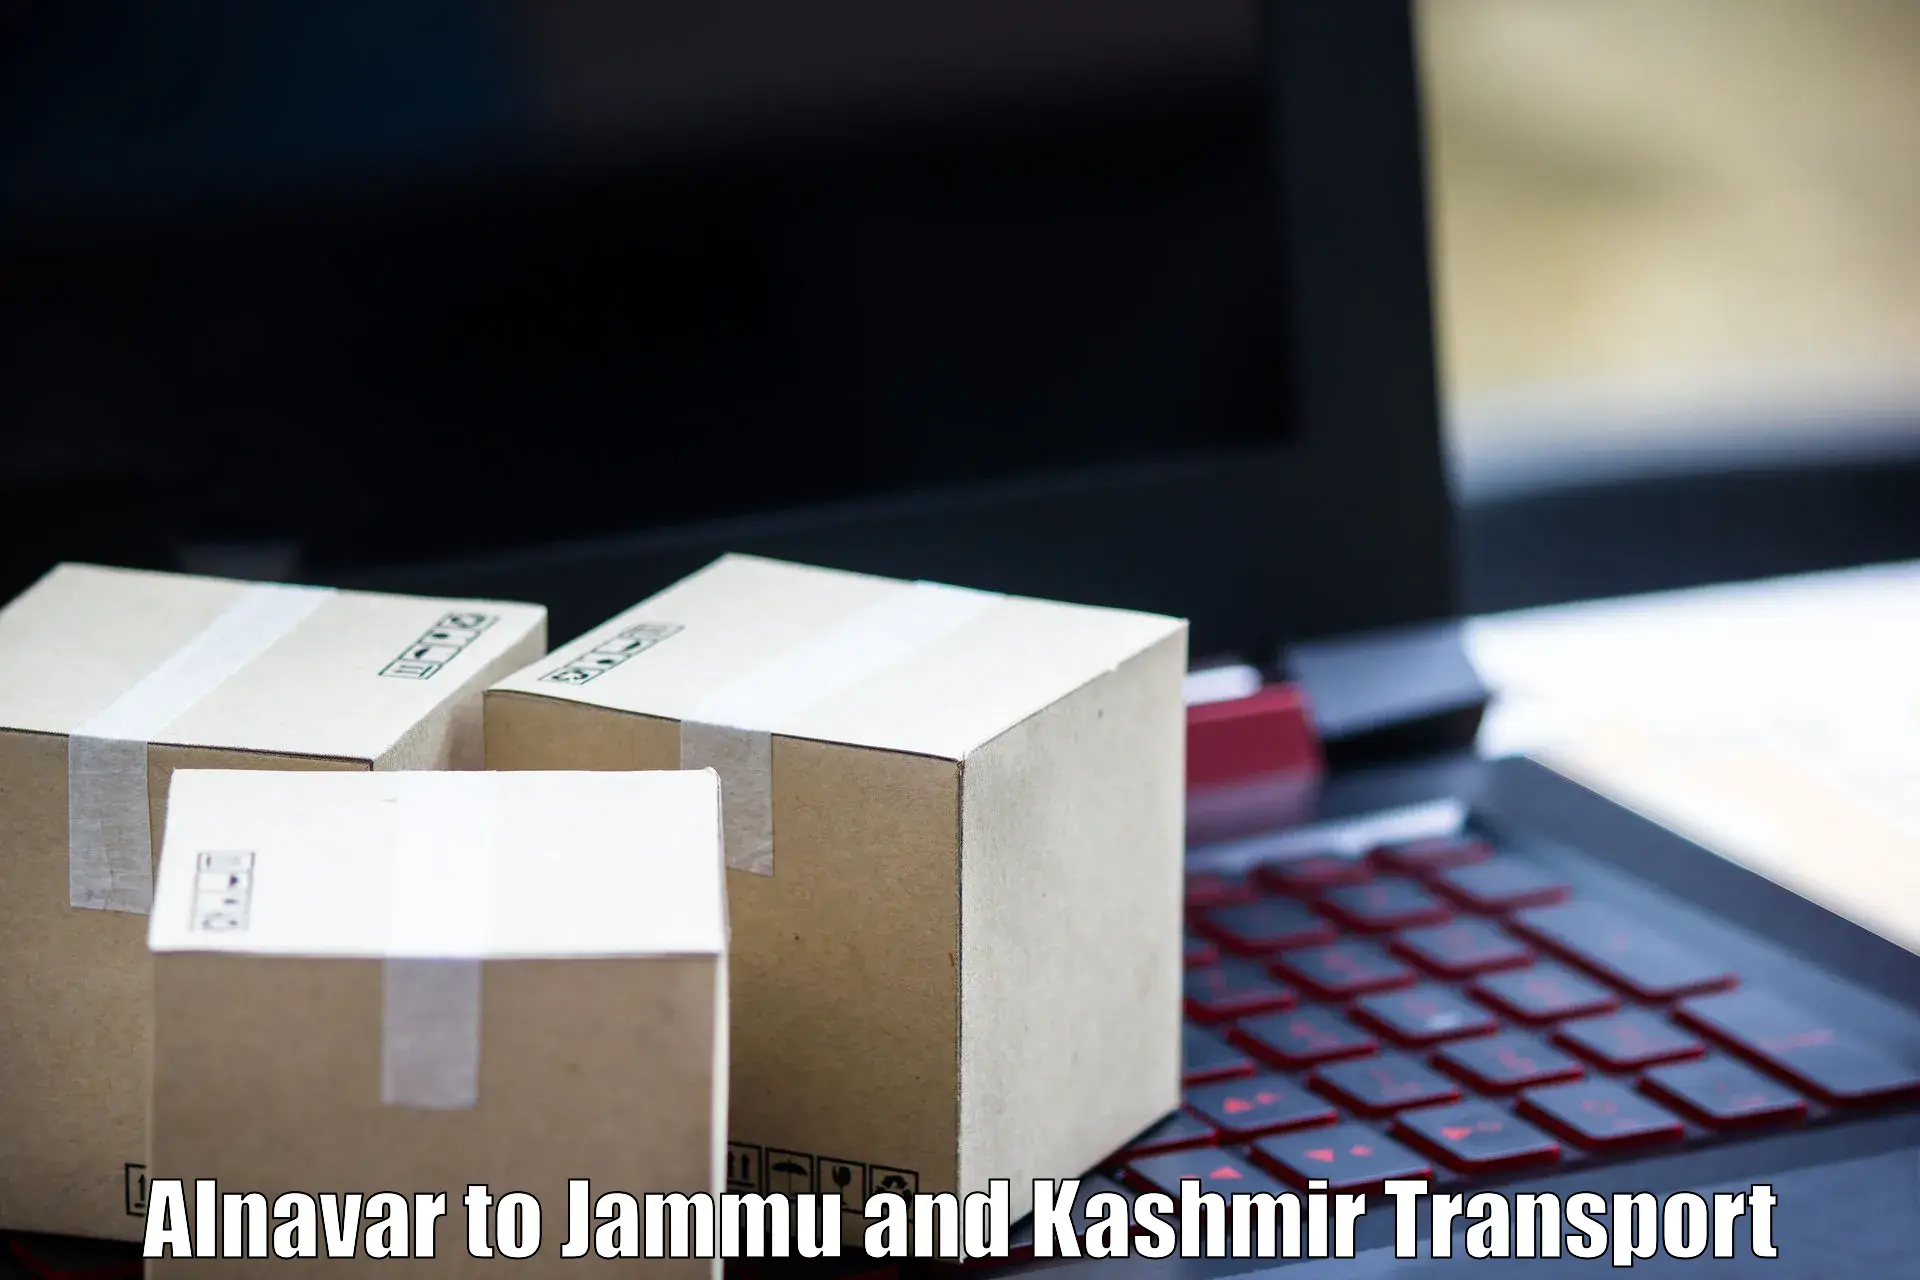 Package delivery services Alnavar to Srinagar Kashmir